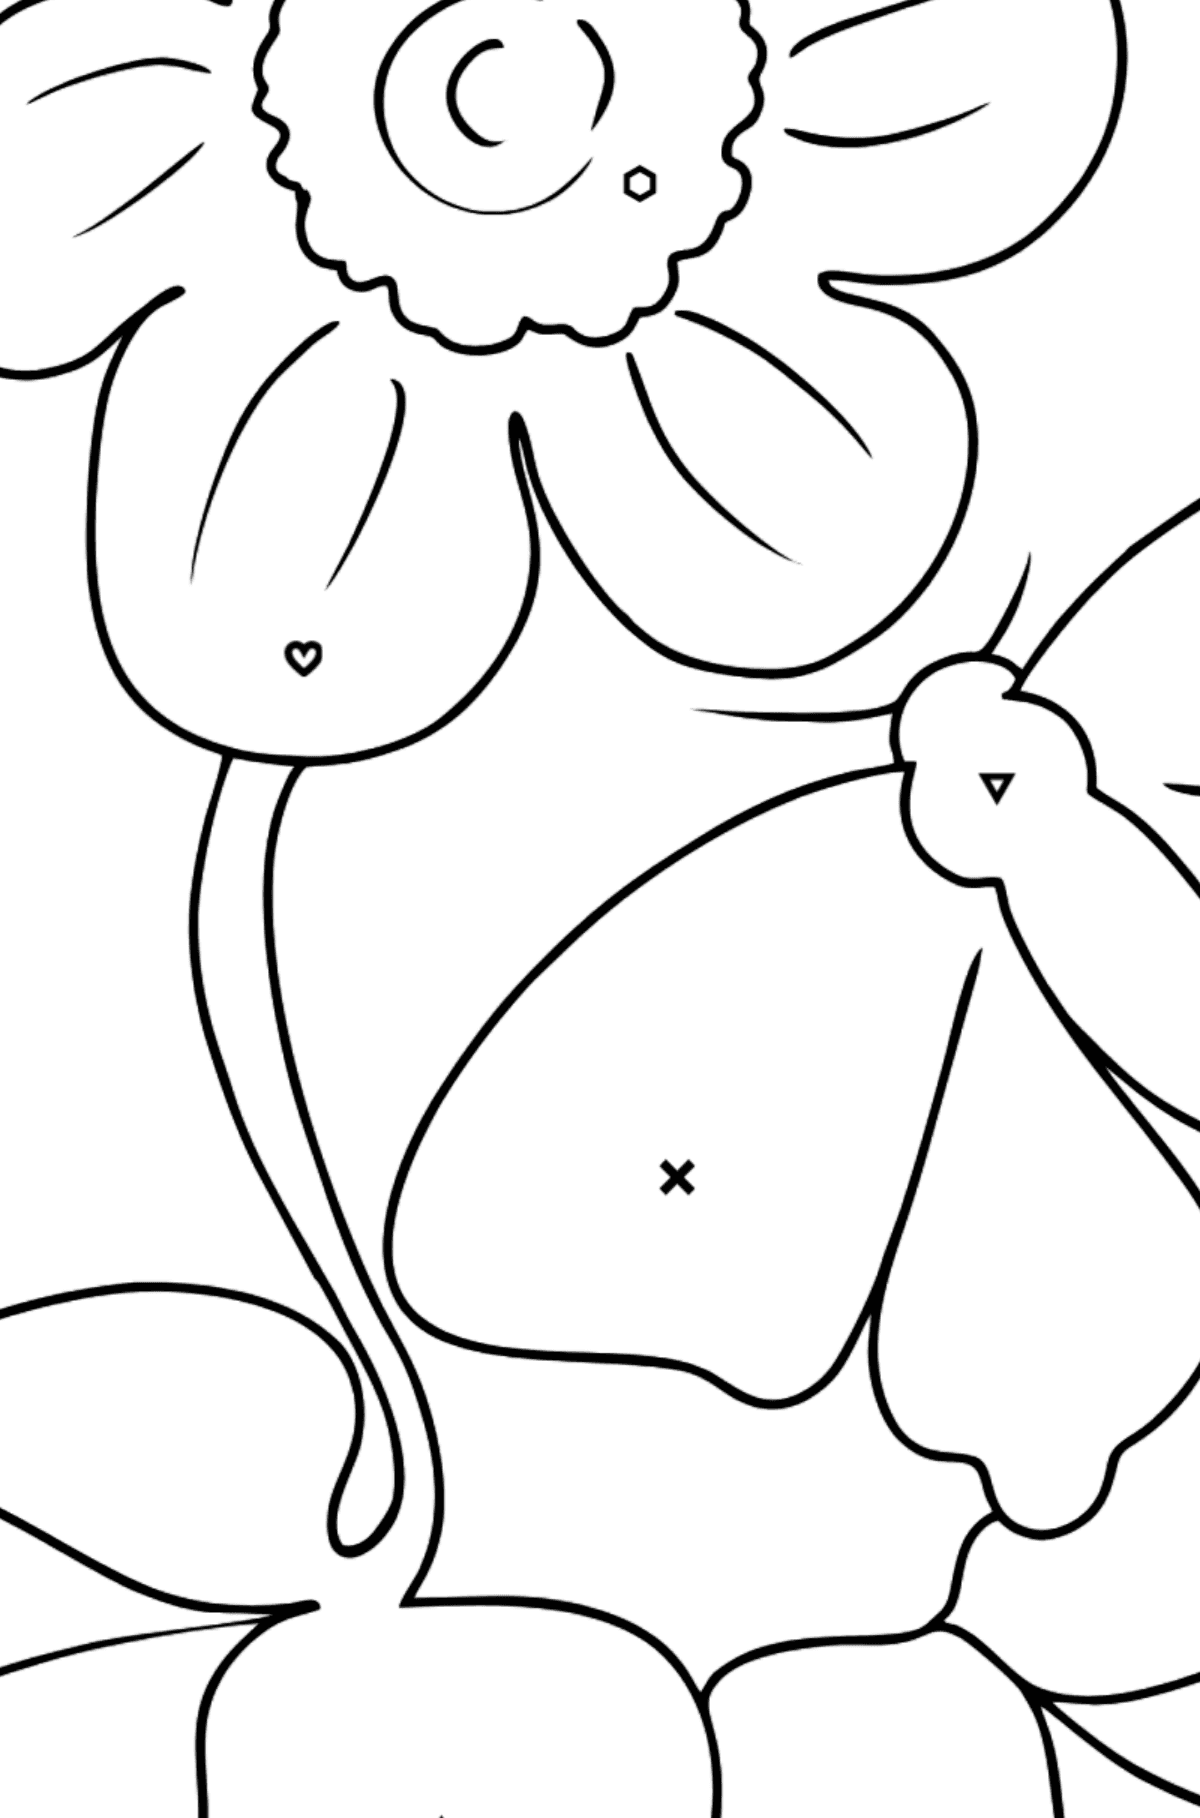 Tegning til fargelegging blomster og sommerfugl - Fargelegge etter symboler og geometriske former for barn